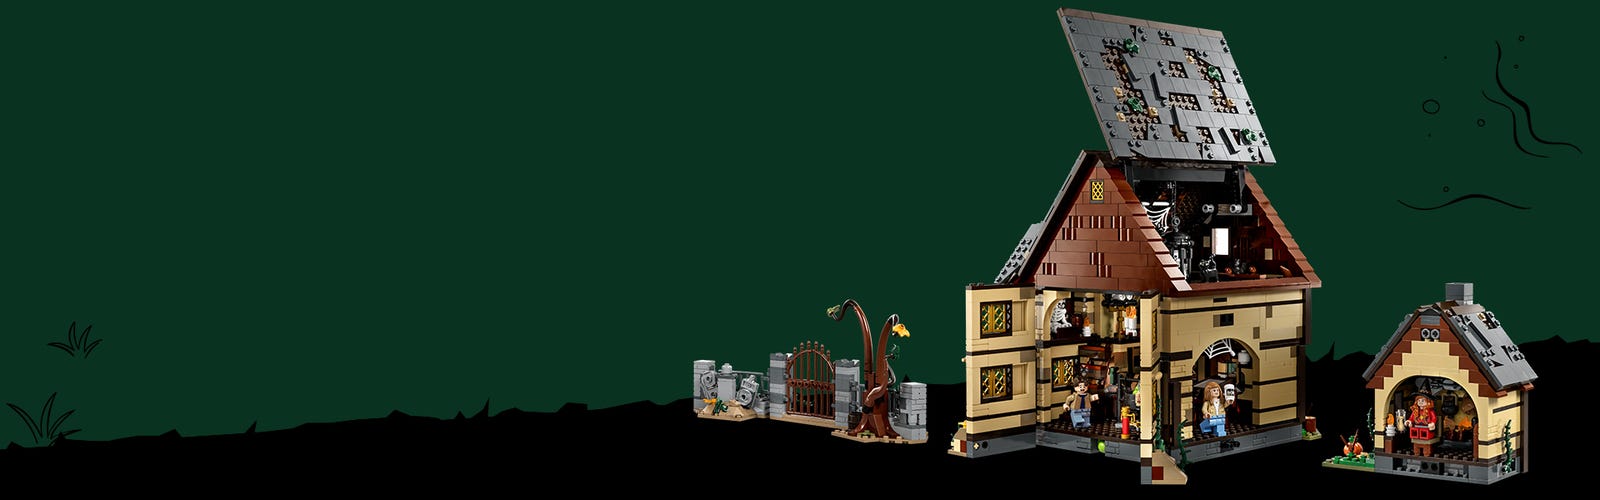 A Hókusz pókusz című filmen alapuló, LEGO kockákból épített házikó